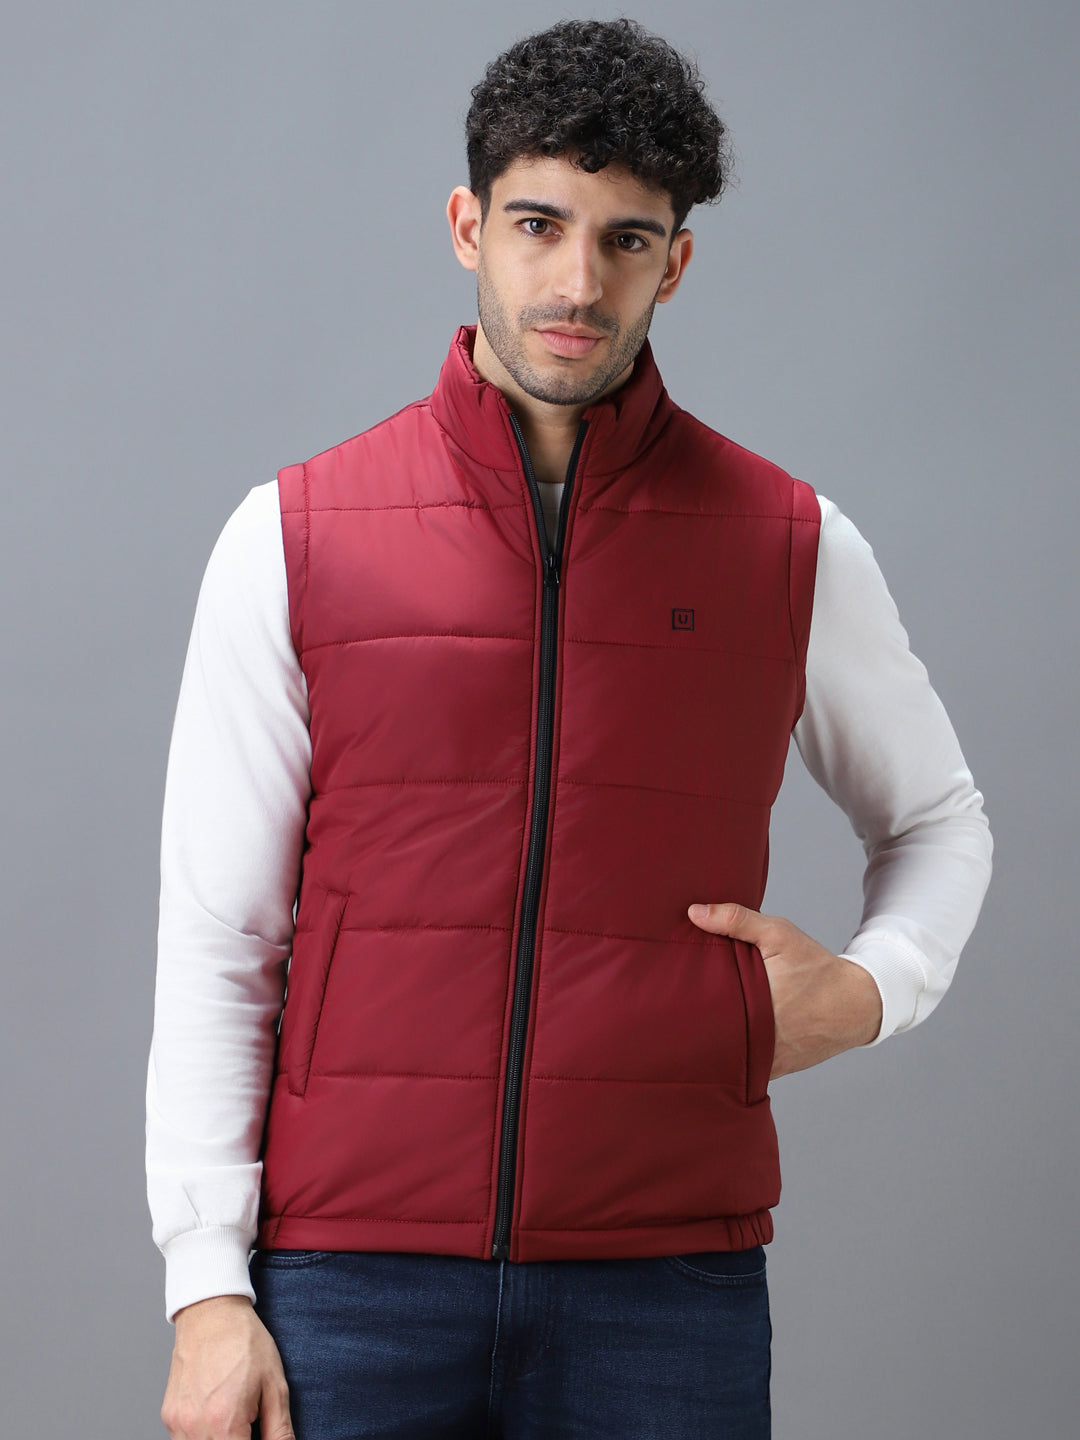 Men's Red Sleeveless Zippered Puffer Jacket